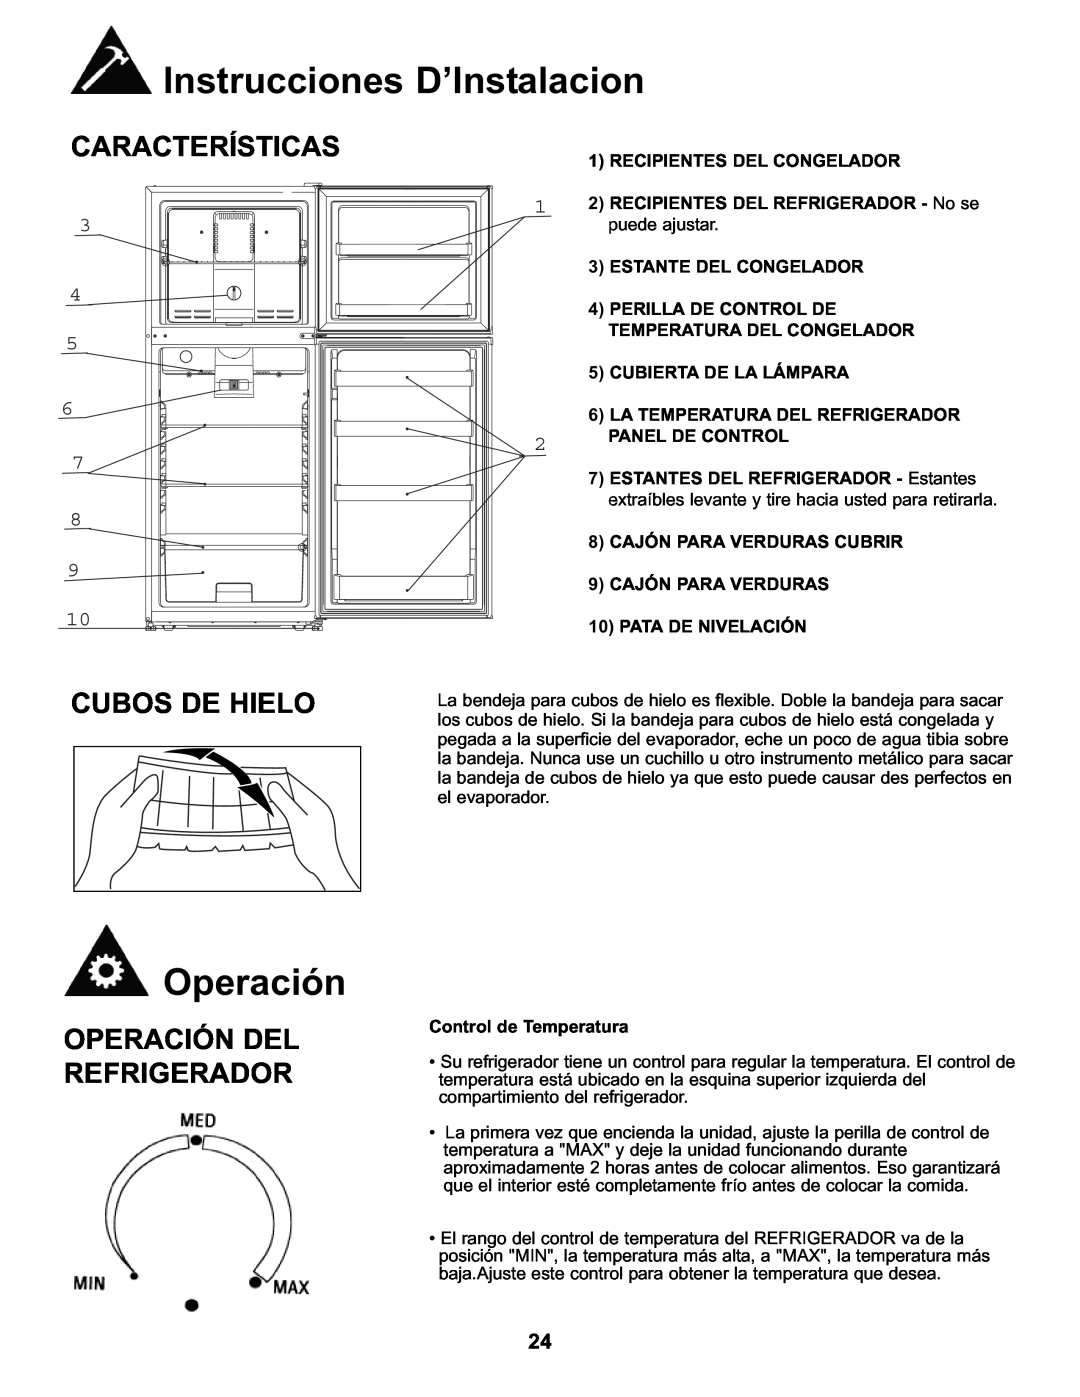 Danby DFF282SLDB manual Características, Cubos De Hielo, Operación Del Refrigerador, Instrucciones D’Instalacion 